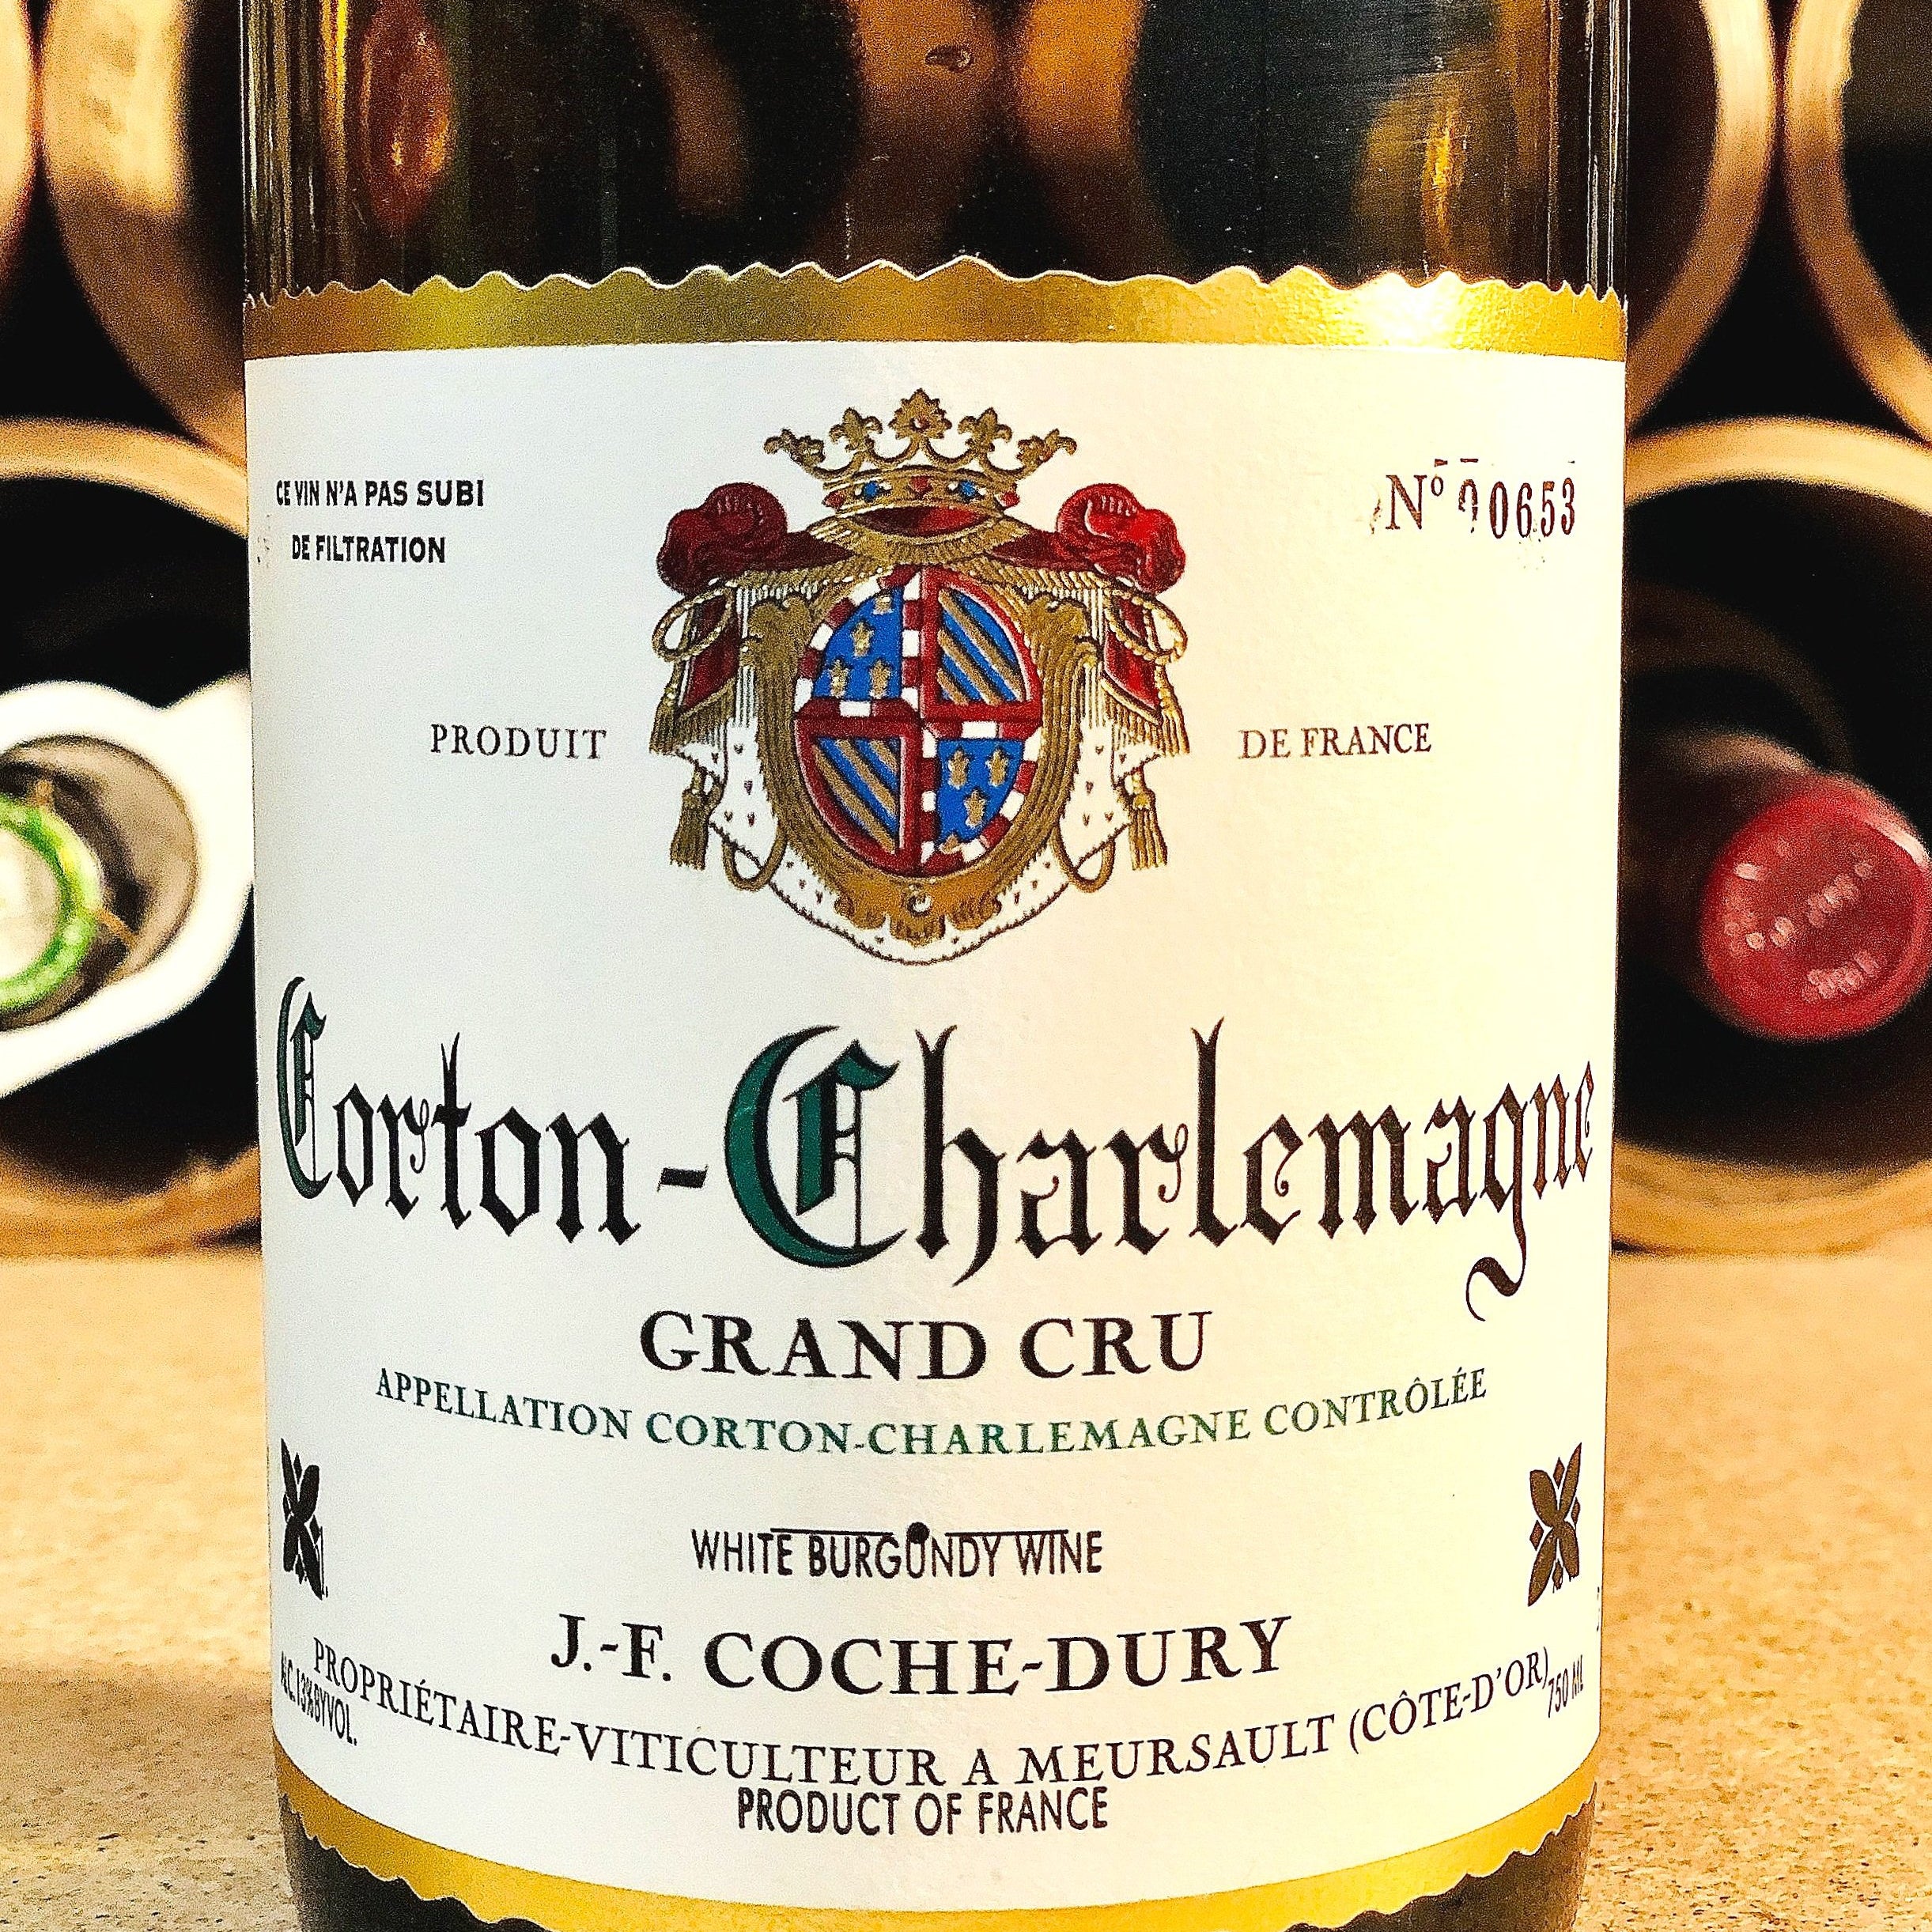 Coche-Dury, Corton-Charlemagne 2001